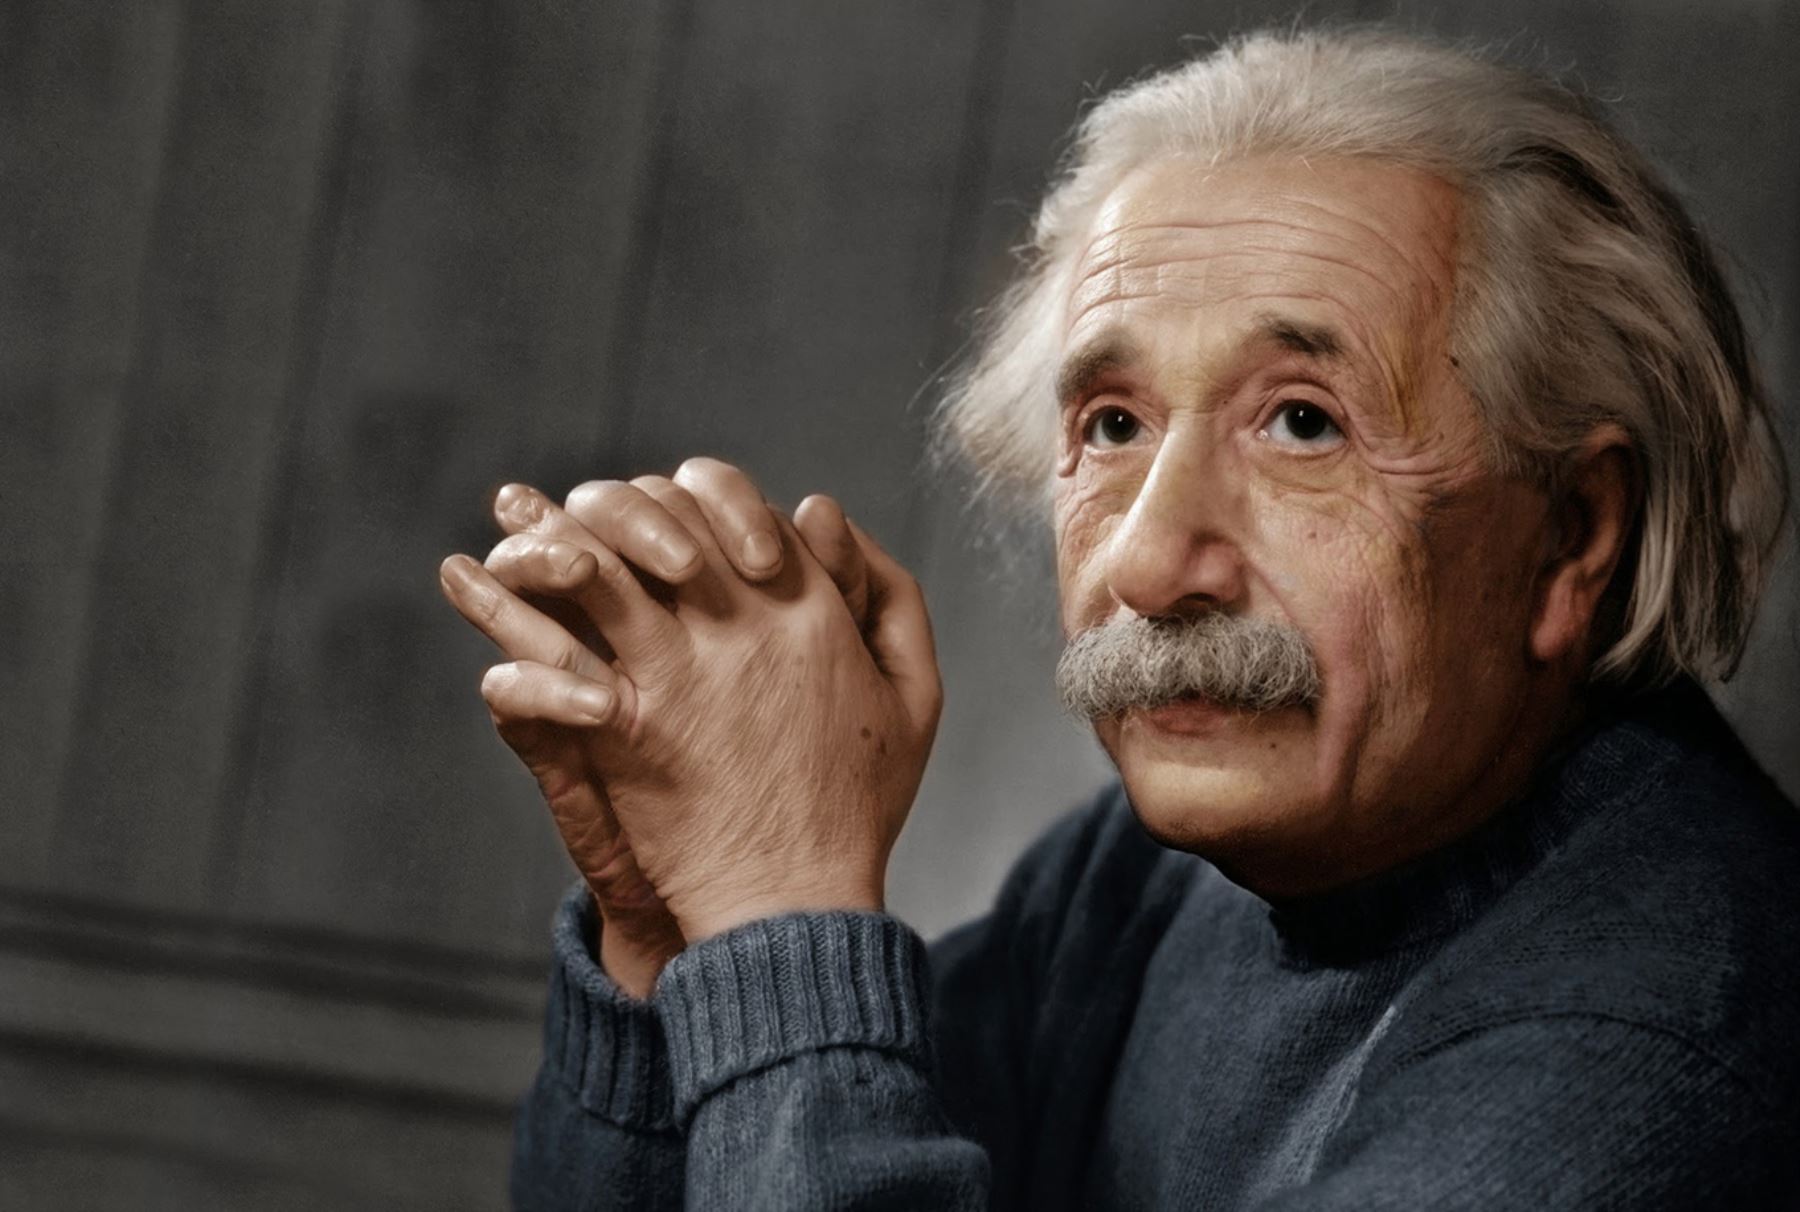 El 14 de marzo de 1879 nacía Albert Einstein, un destacado físico judío-alemán, muy conocido por la teoría de la relatividad y el planteamiento de la famosa ecuación E = mc². Foto: Internet